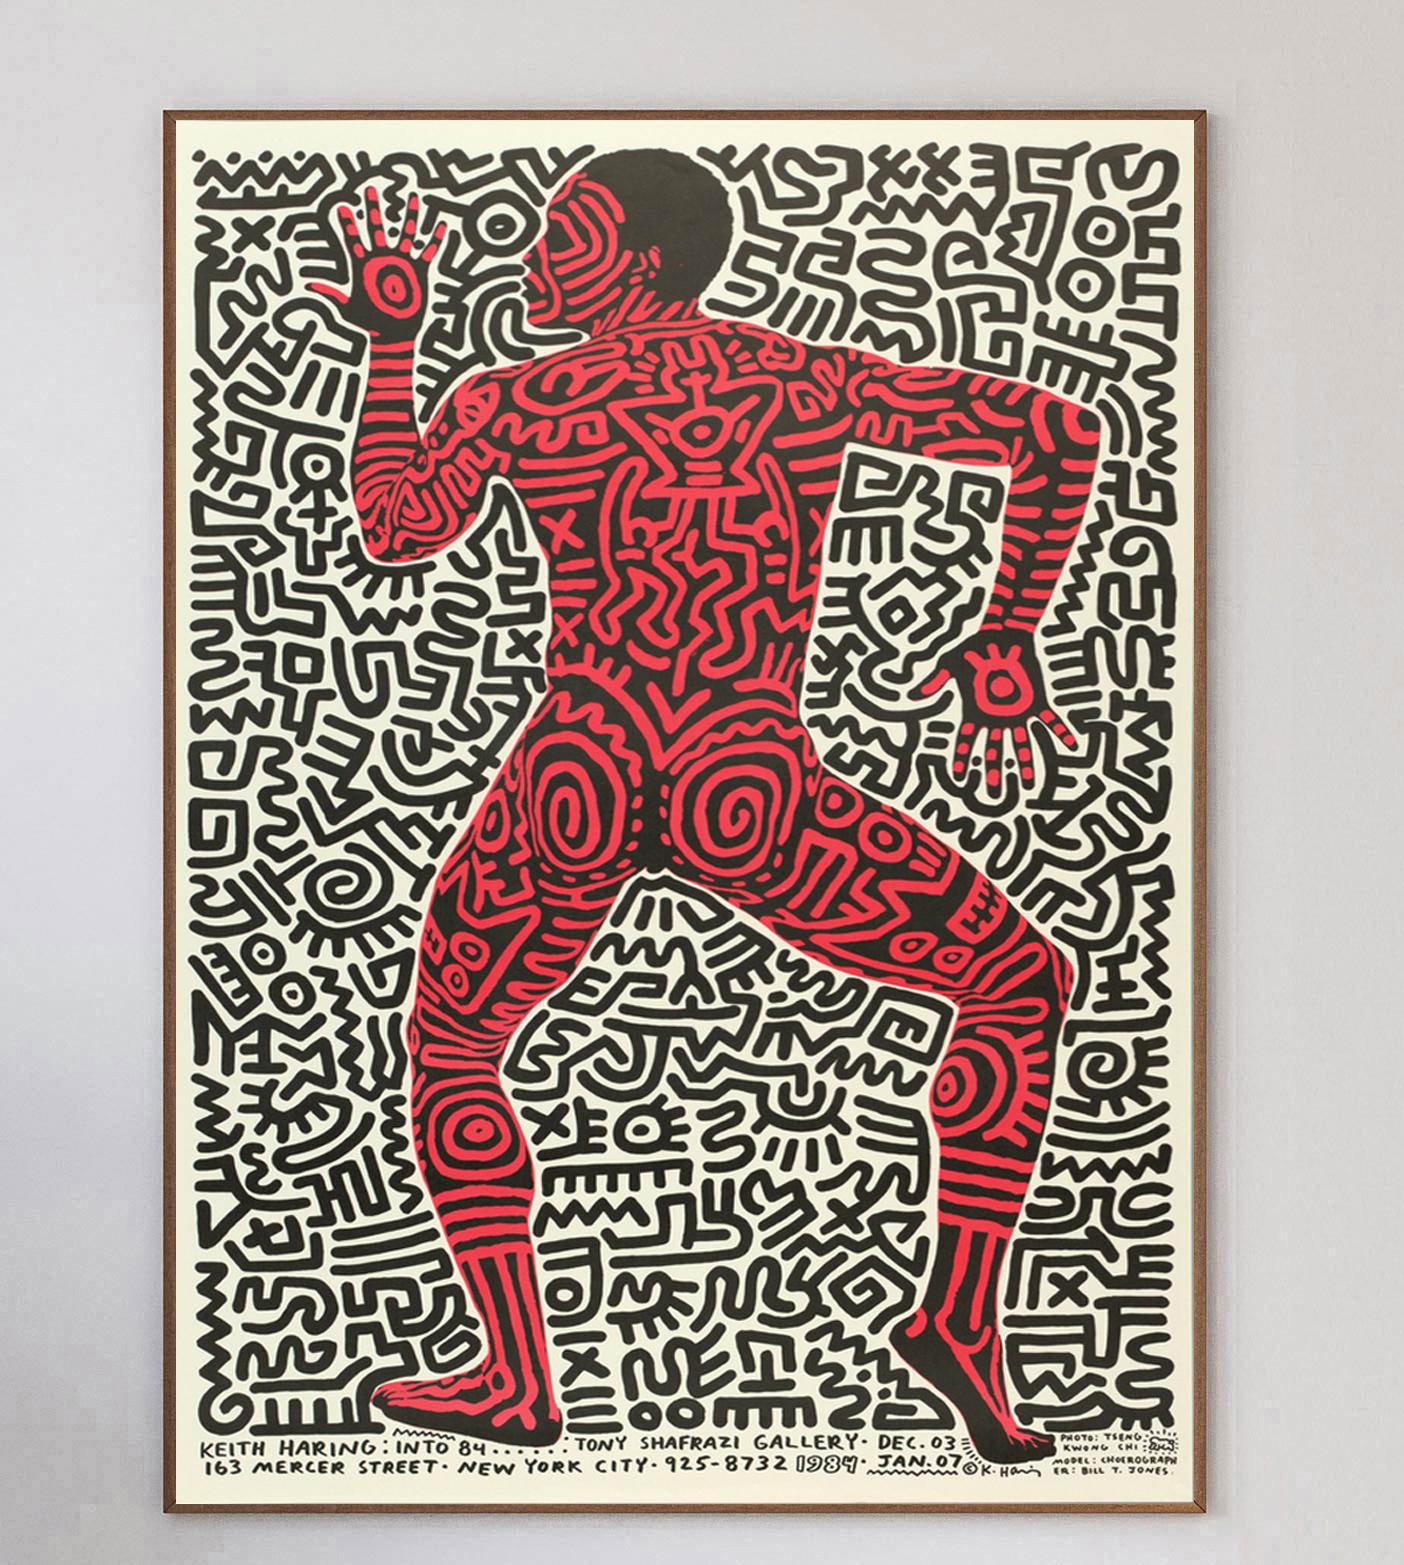 Représentant un personnage tourné vers la gauche, cette pièce étonnante et rare a été conçue par l'artiste pop et de rue américain Keith Haring. L'affiche a été créée par Haring pour promouvoir son exposition à la Tony Shafrazi Gallery de New York